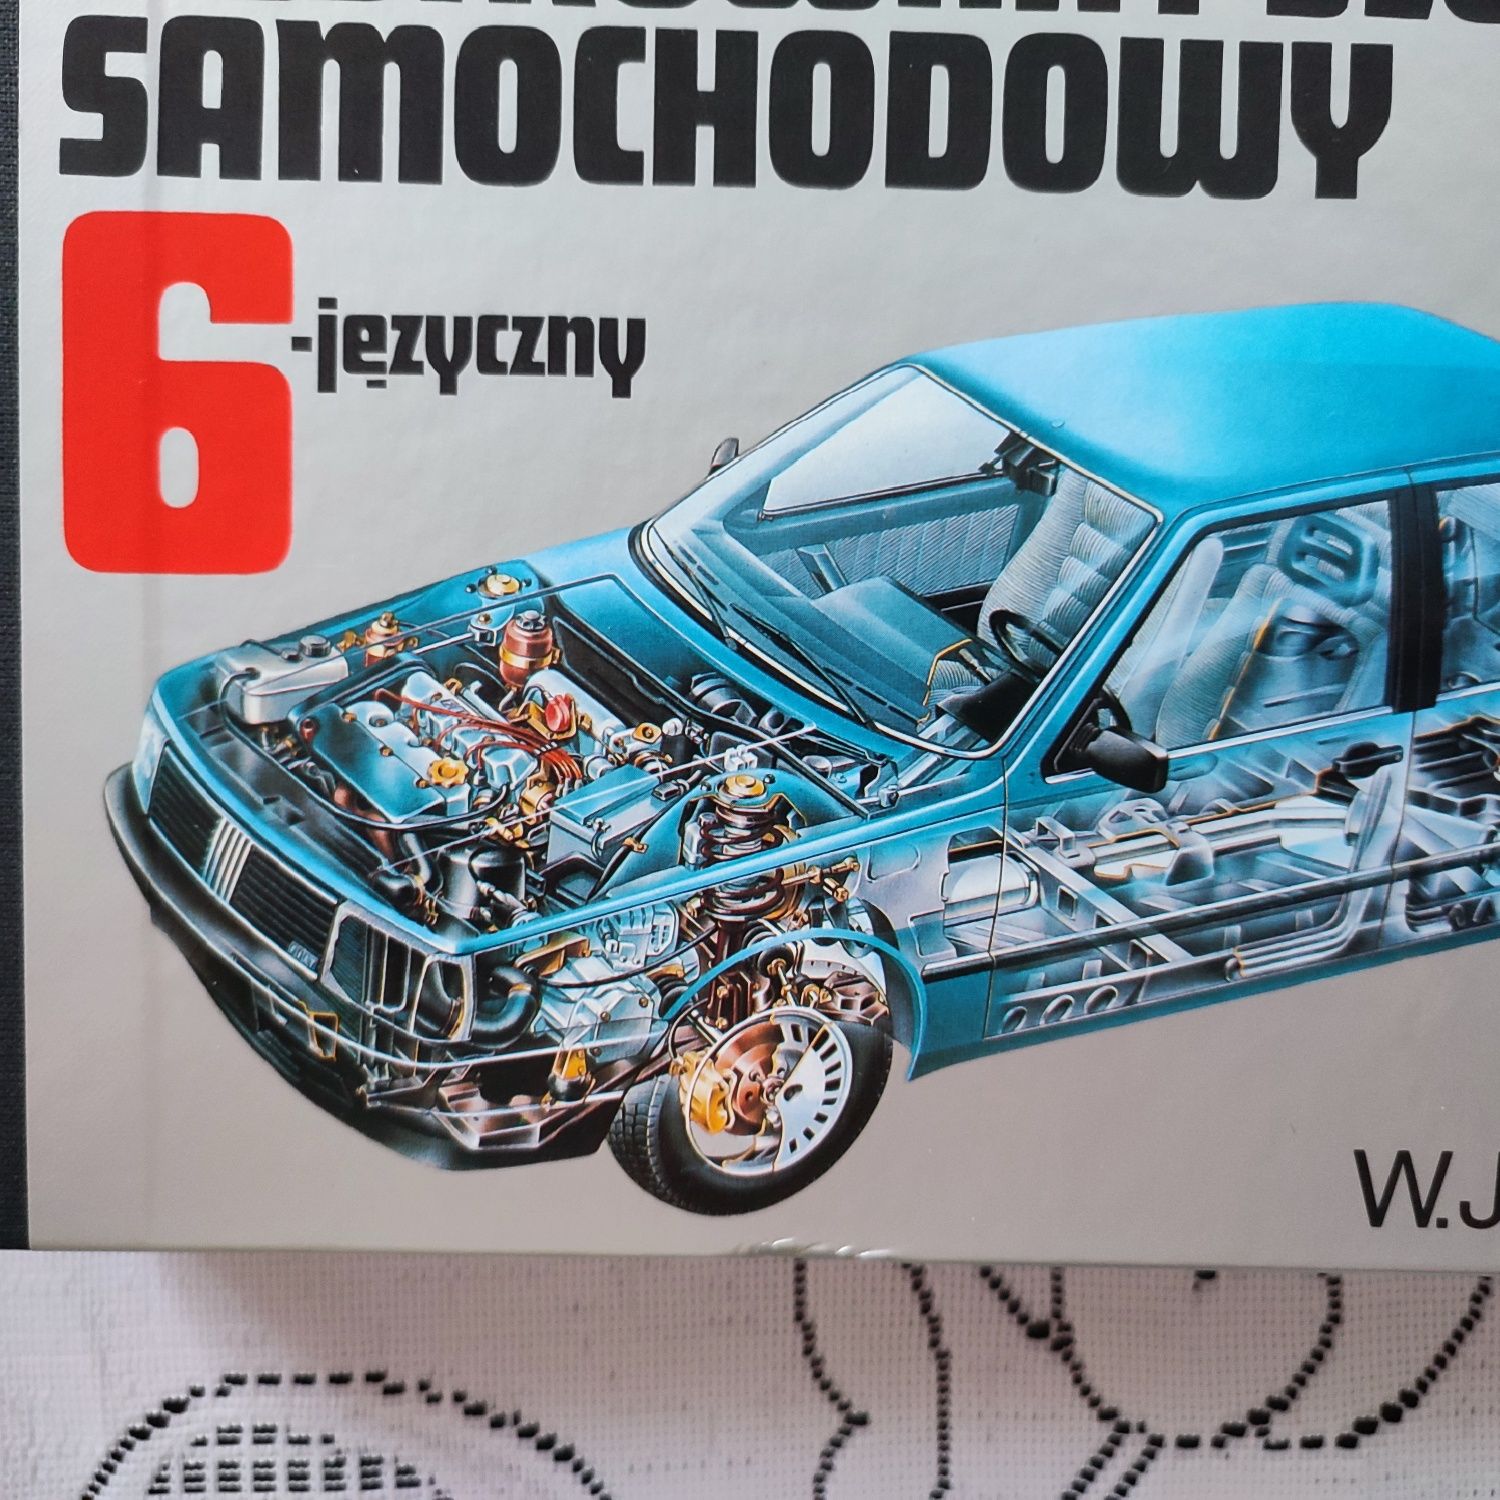 Słownik samochodowy 6- jezyczny.